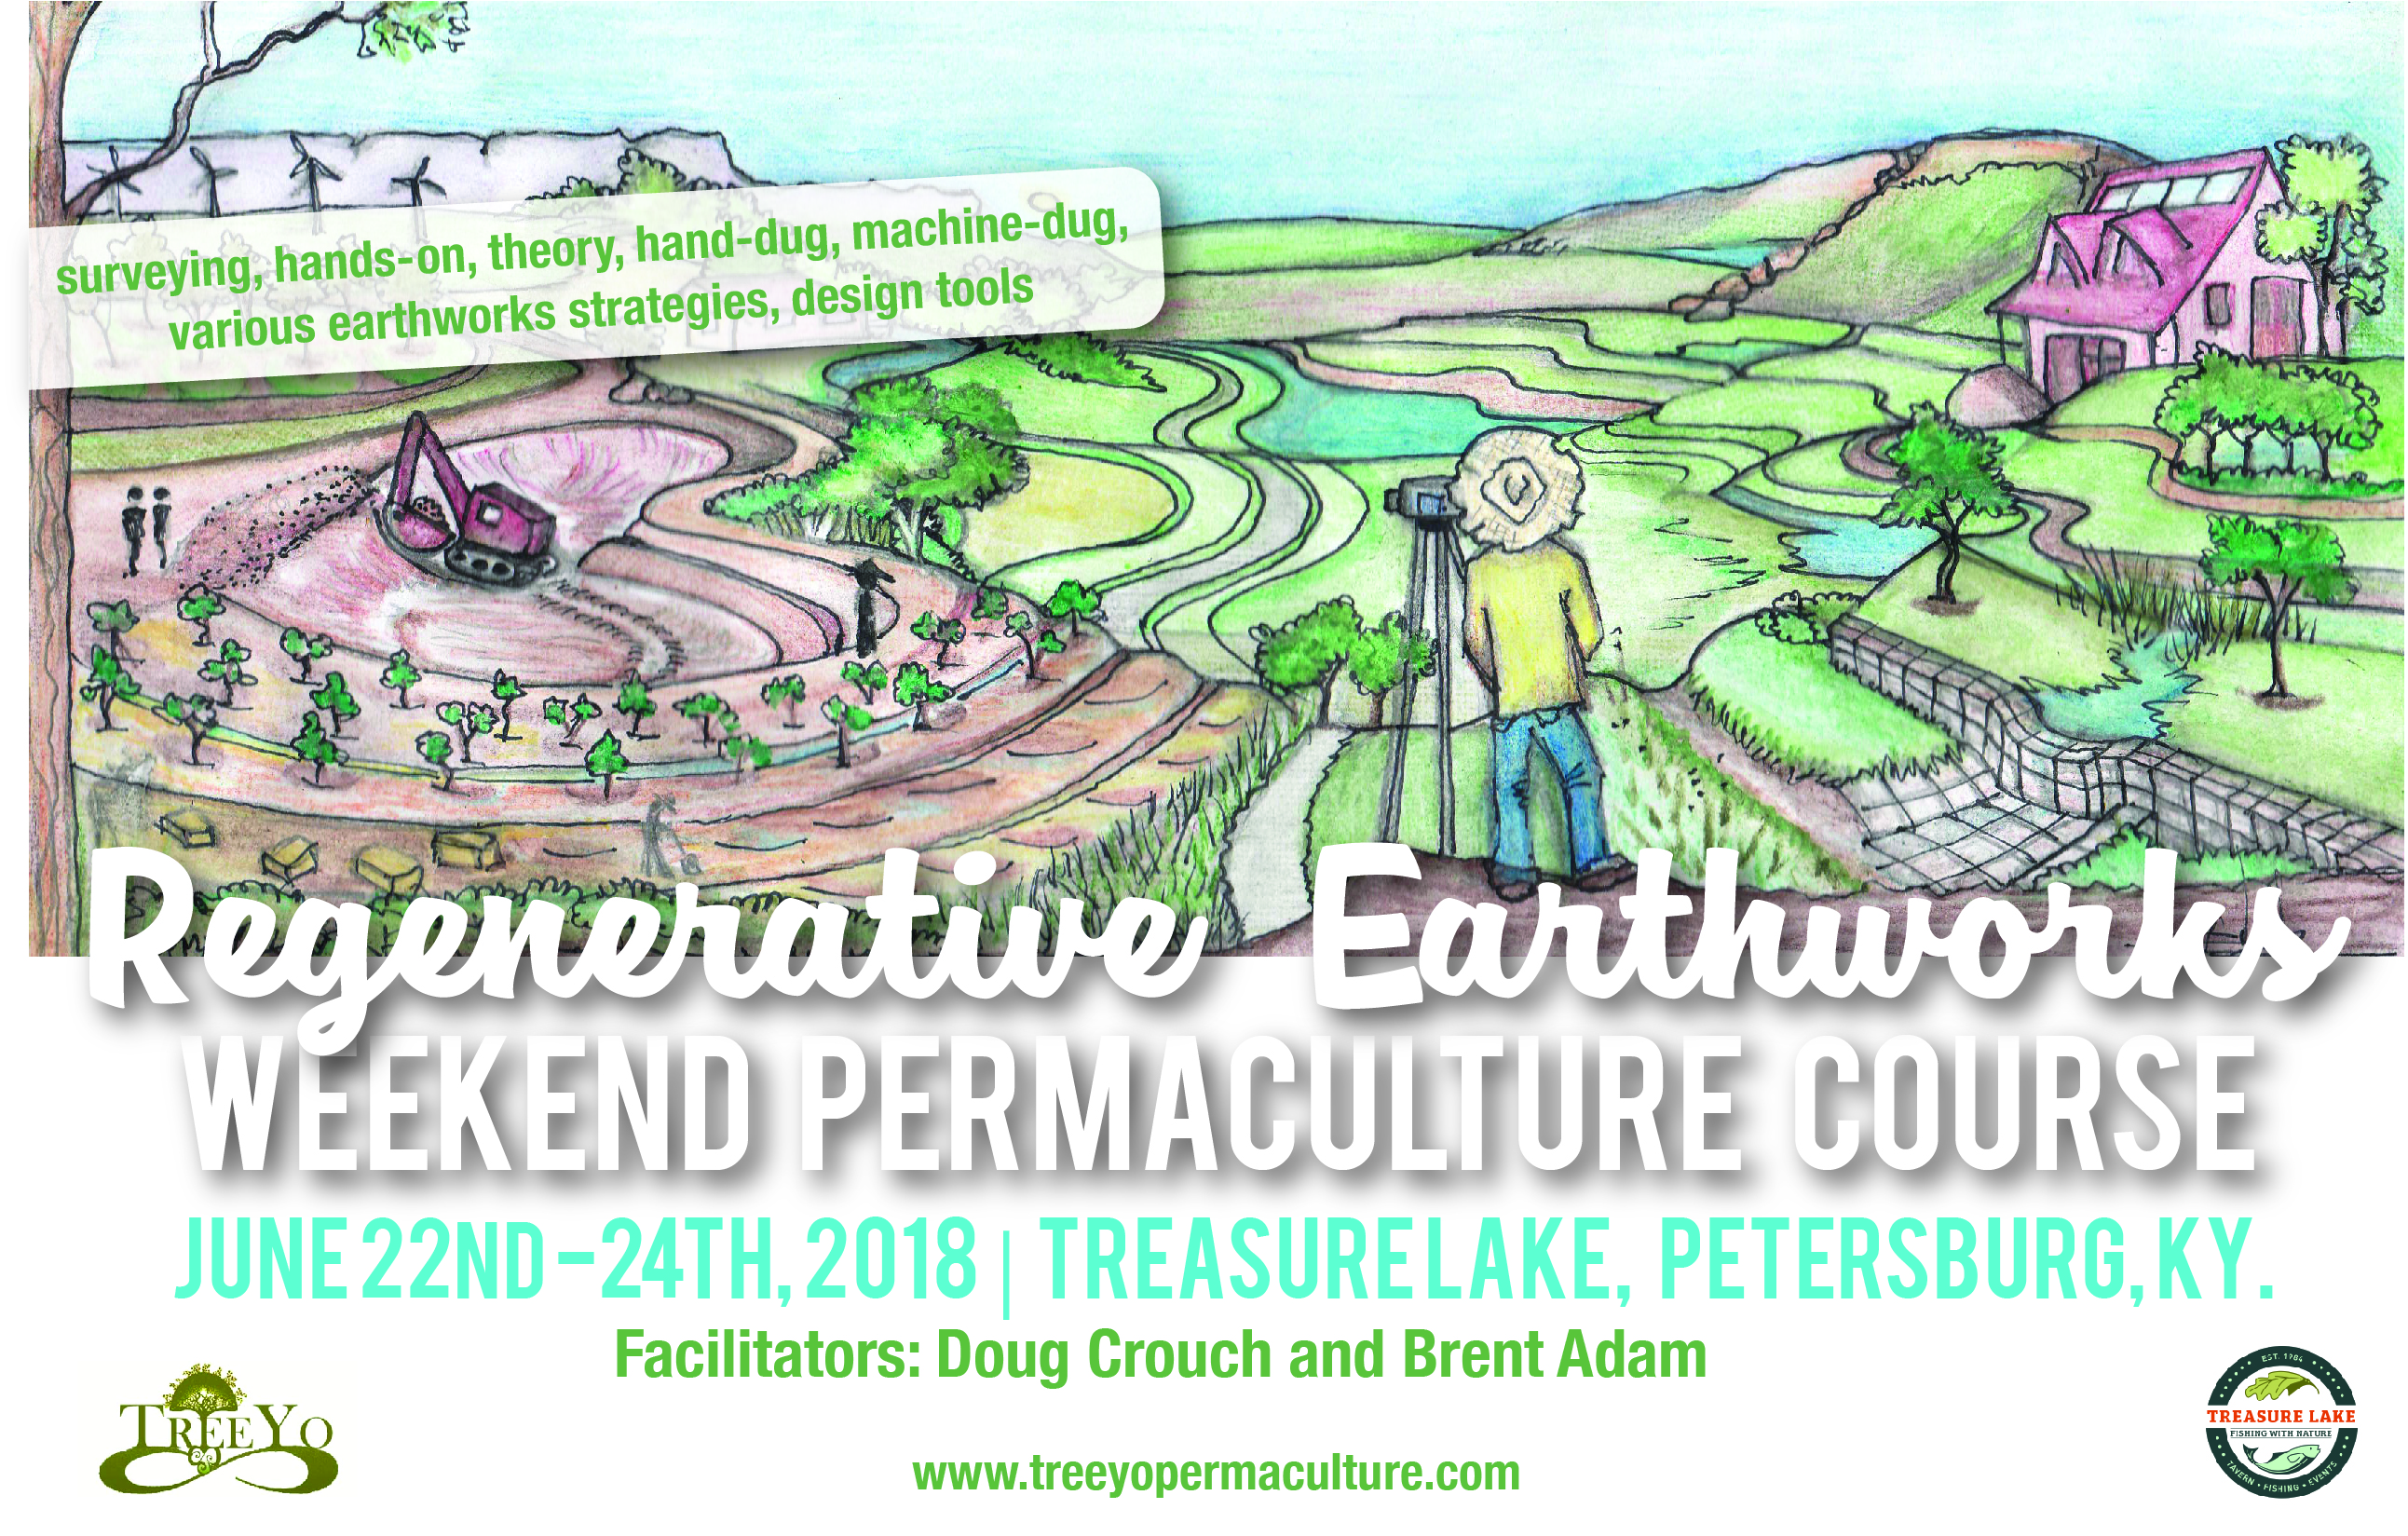 Regenerative Earthworks Weekend Course: June 22nd-24th, 2018: Treasure Lake, Petersburg, Kentucky.